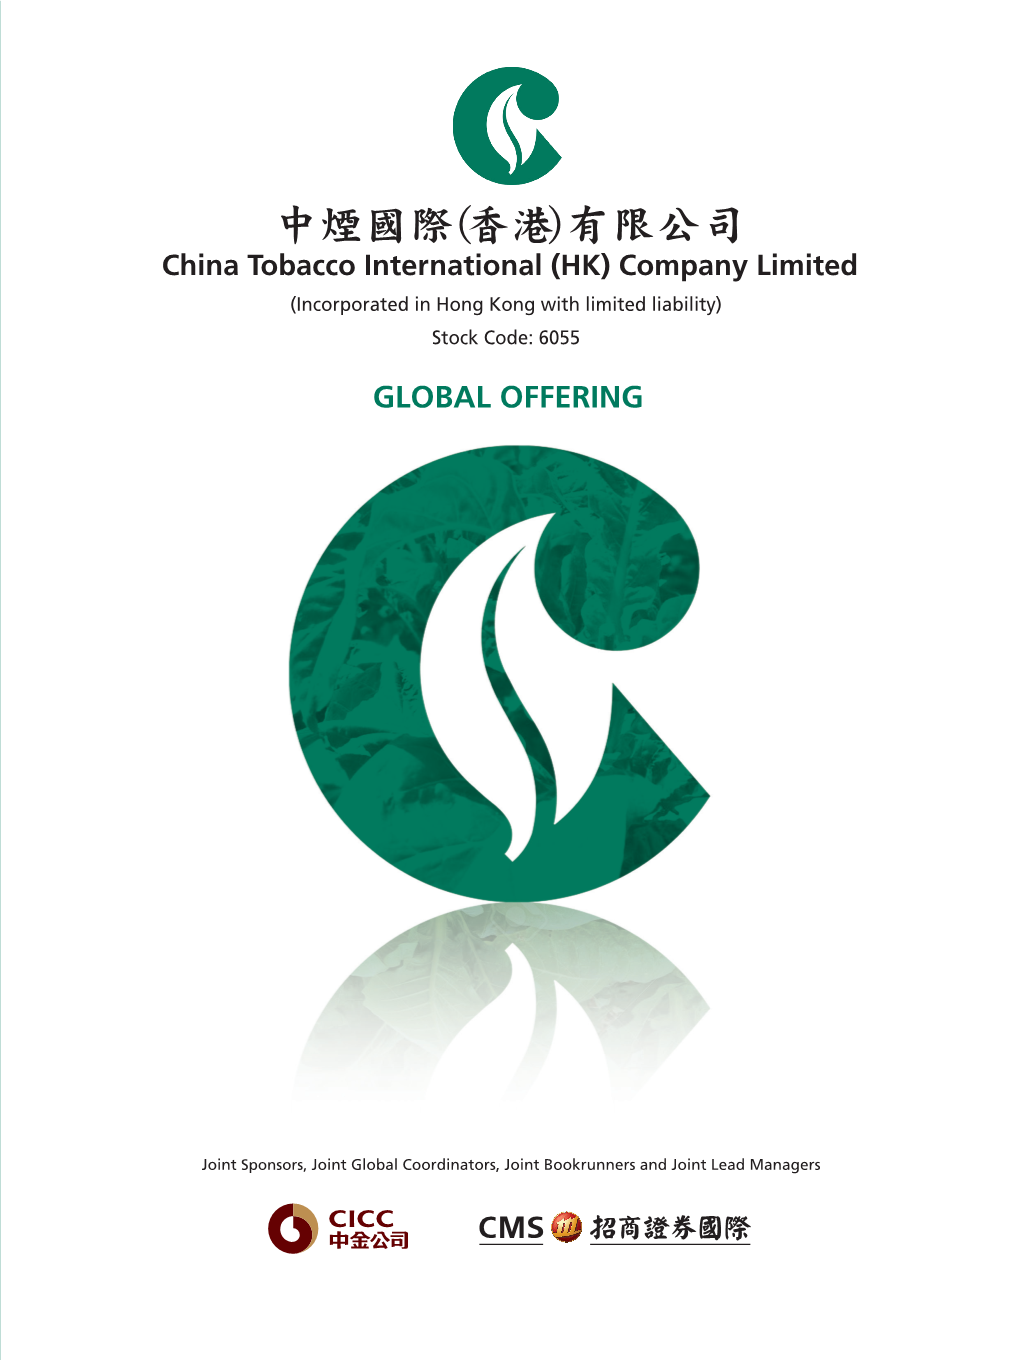 有限公司 China Tobacco International (HK) Company Limited (Incorporated in Hong Kong with Limited Liability)